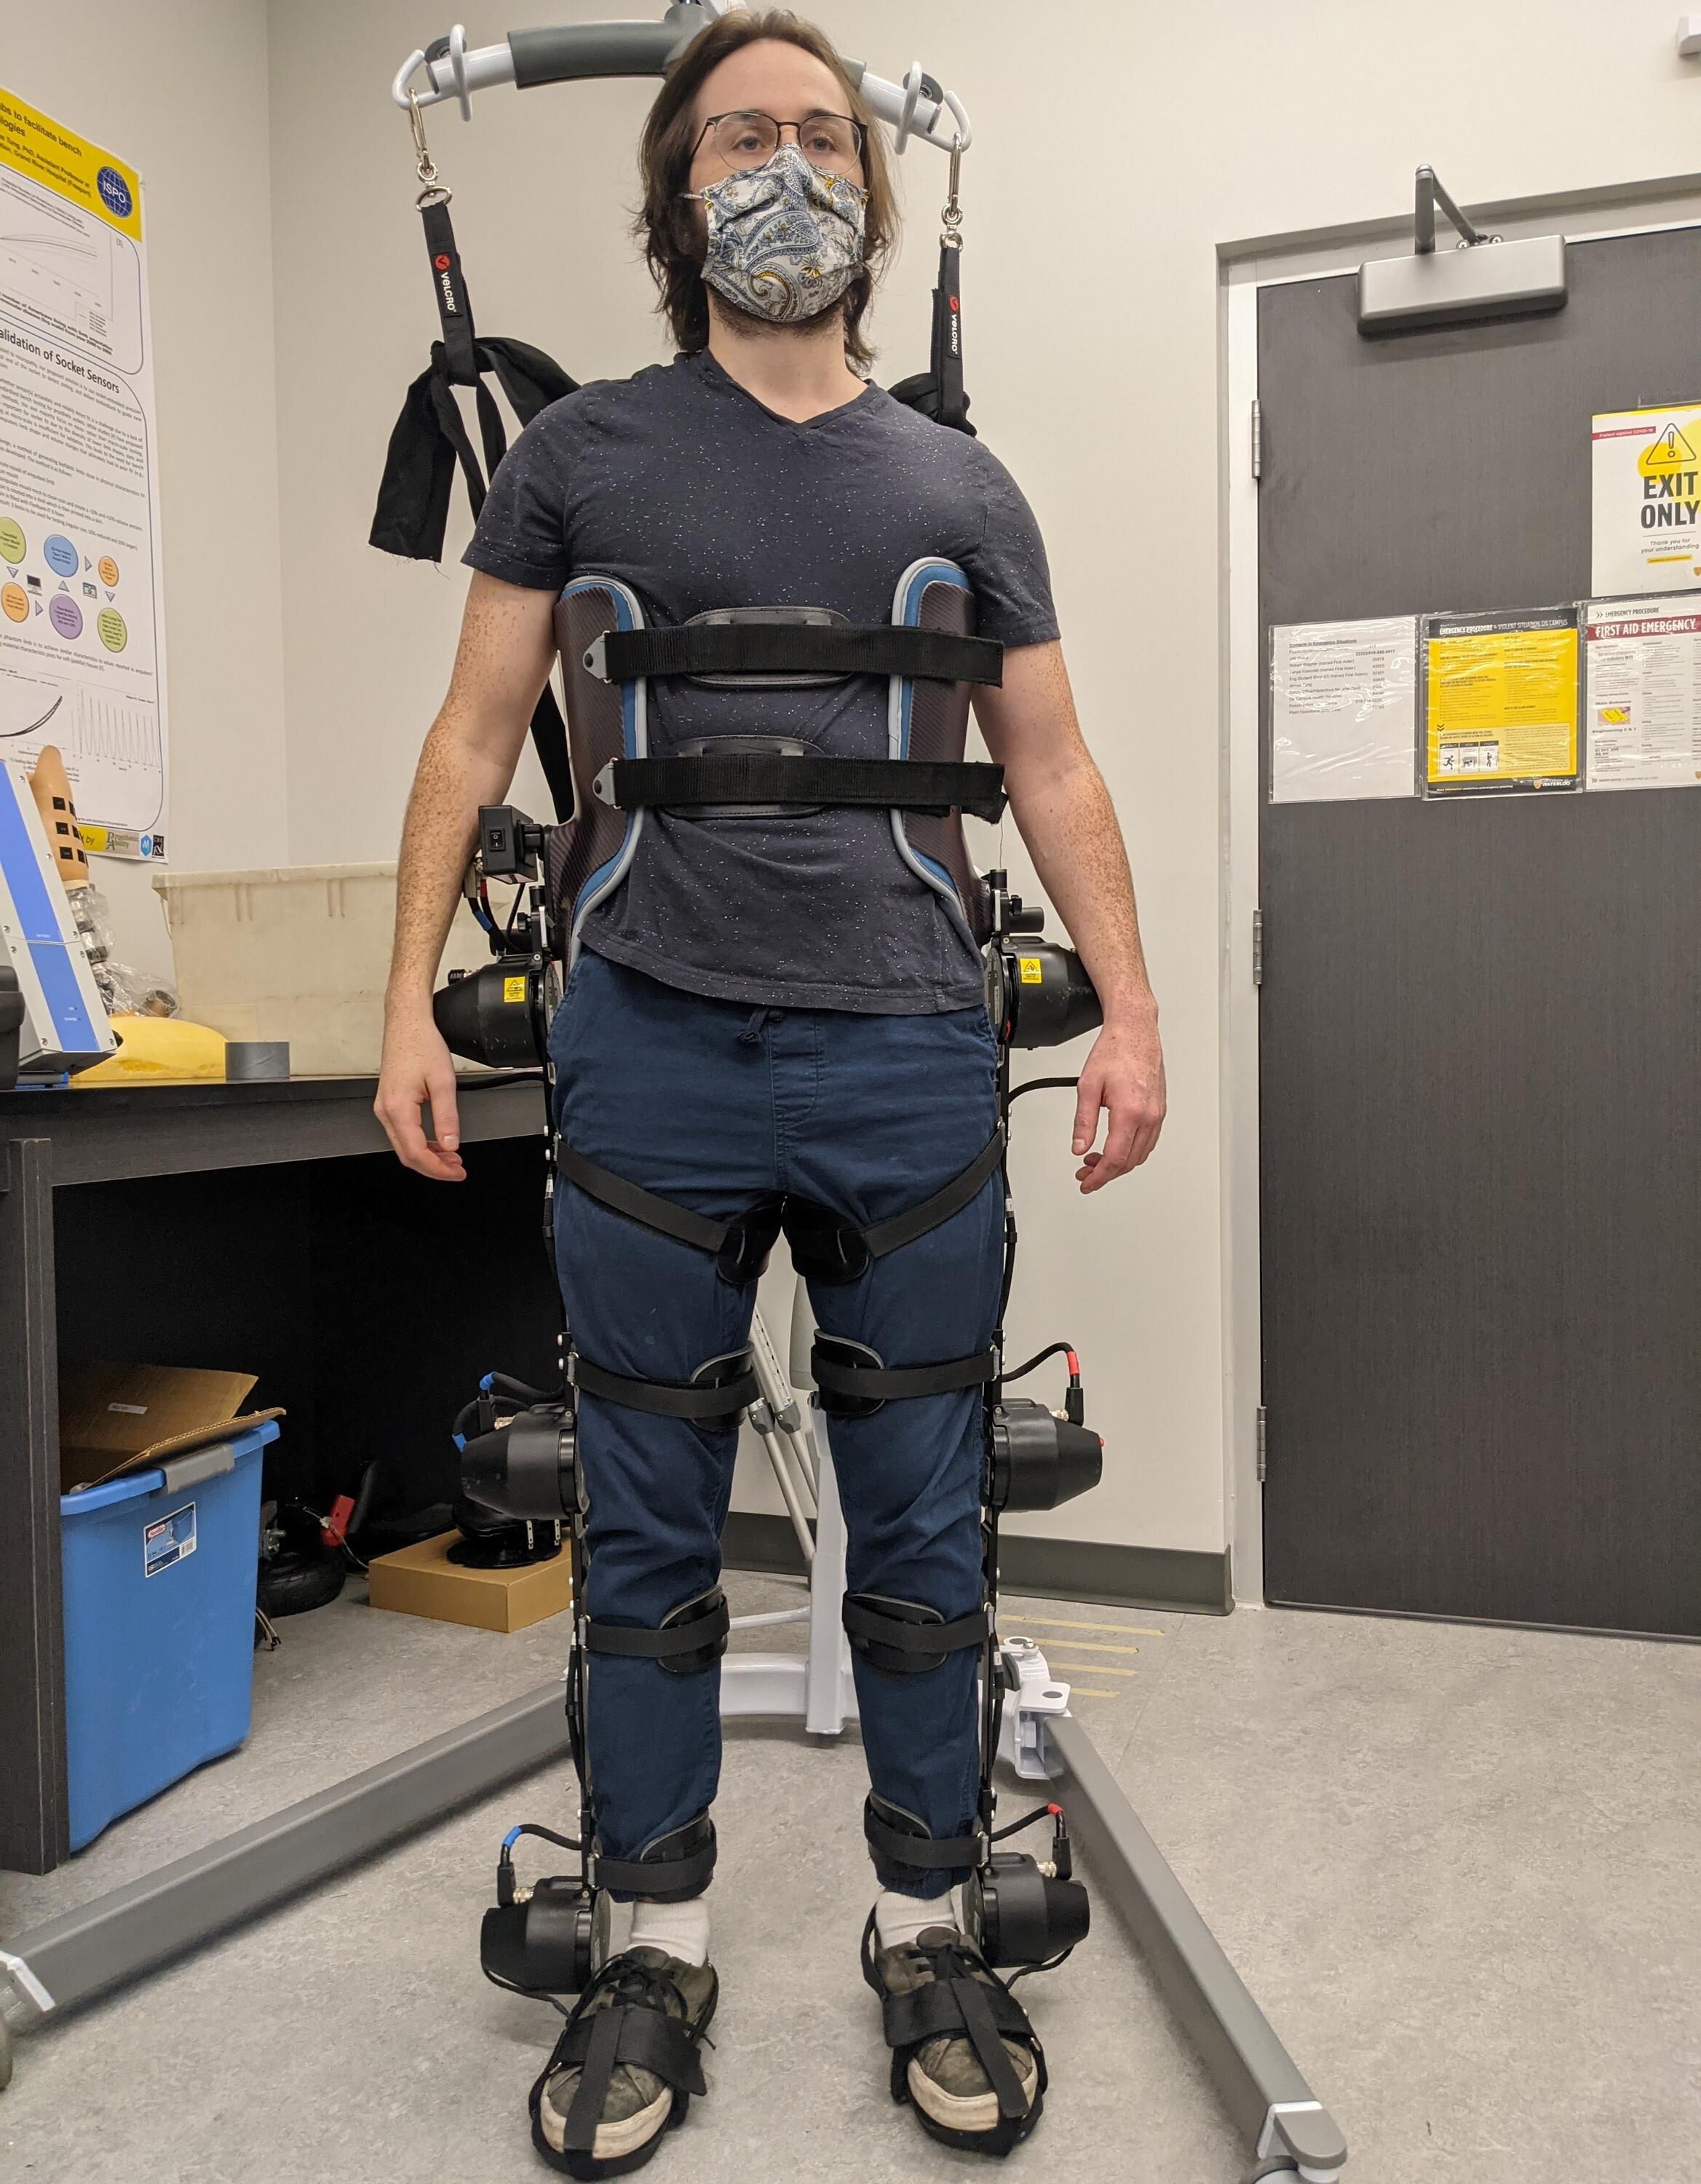 Lab member wearing an exoskeleton